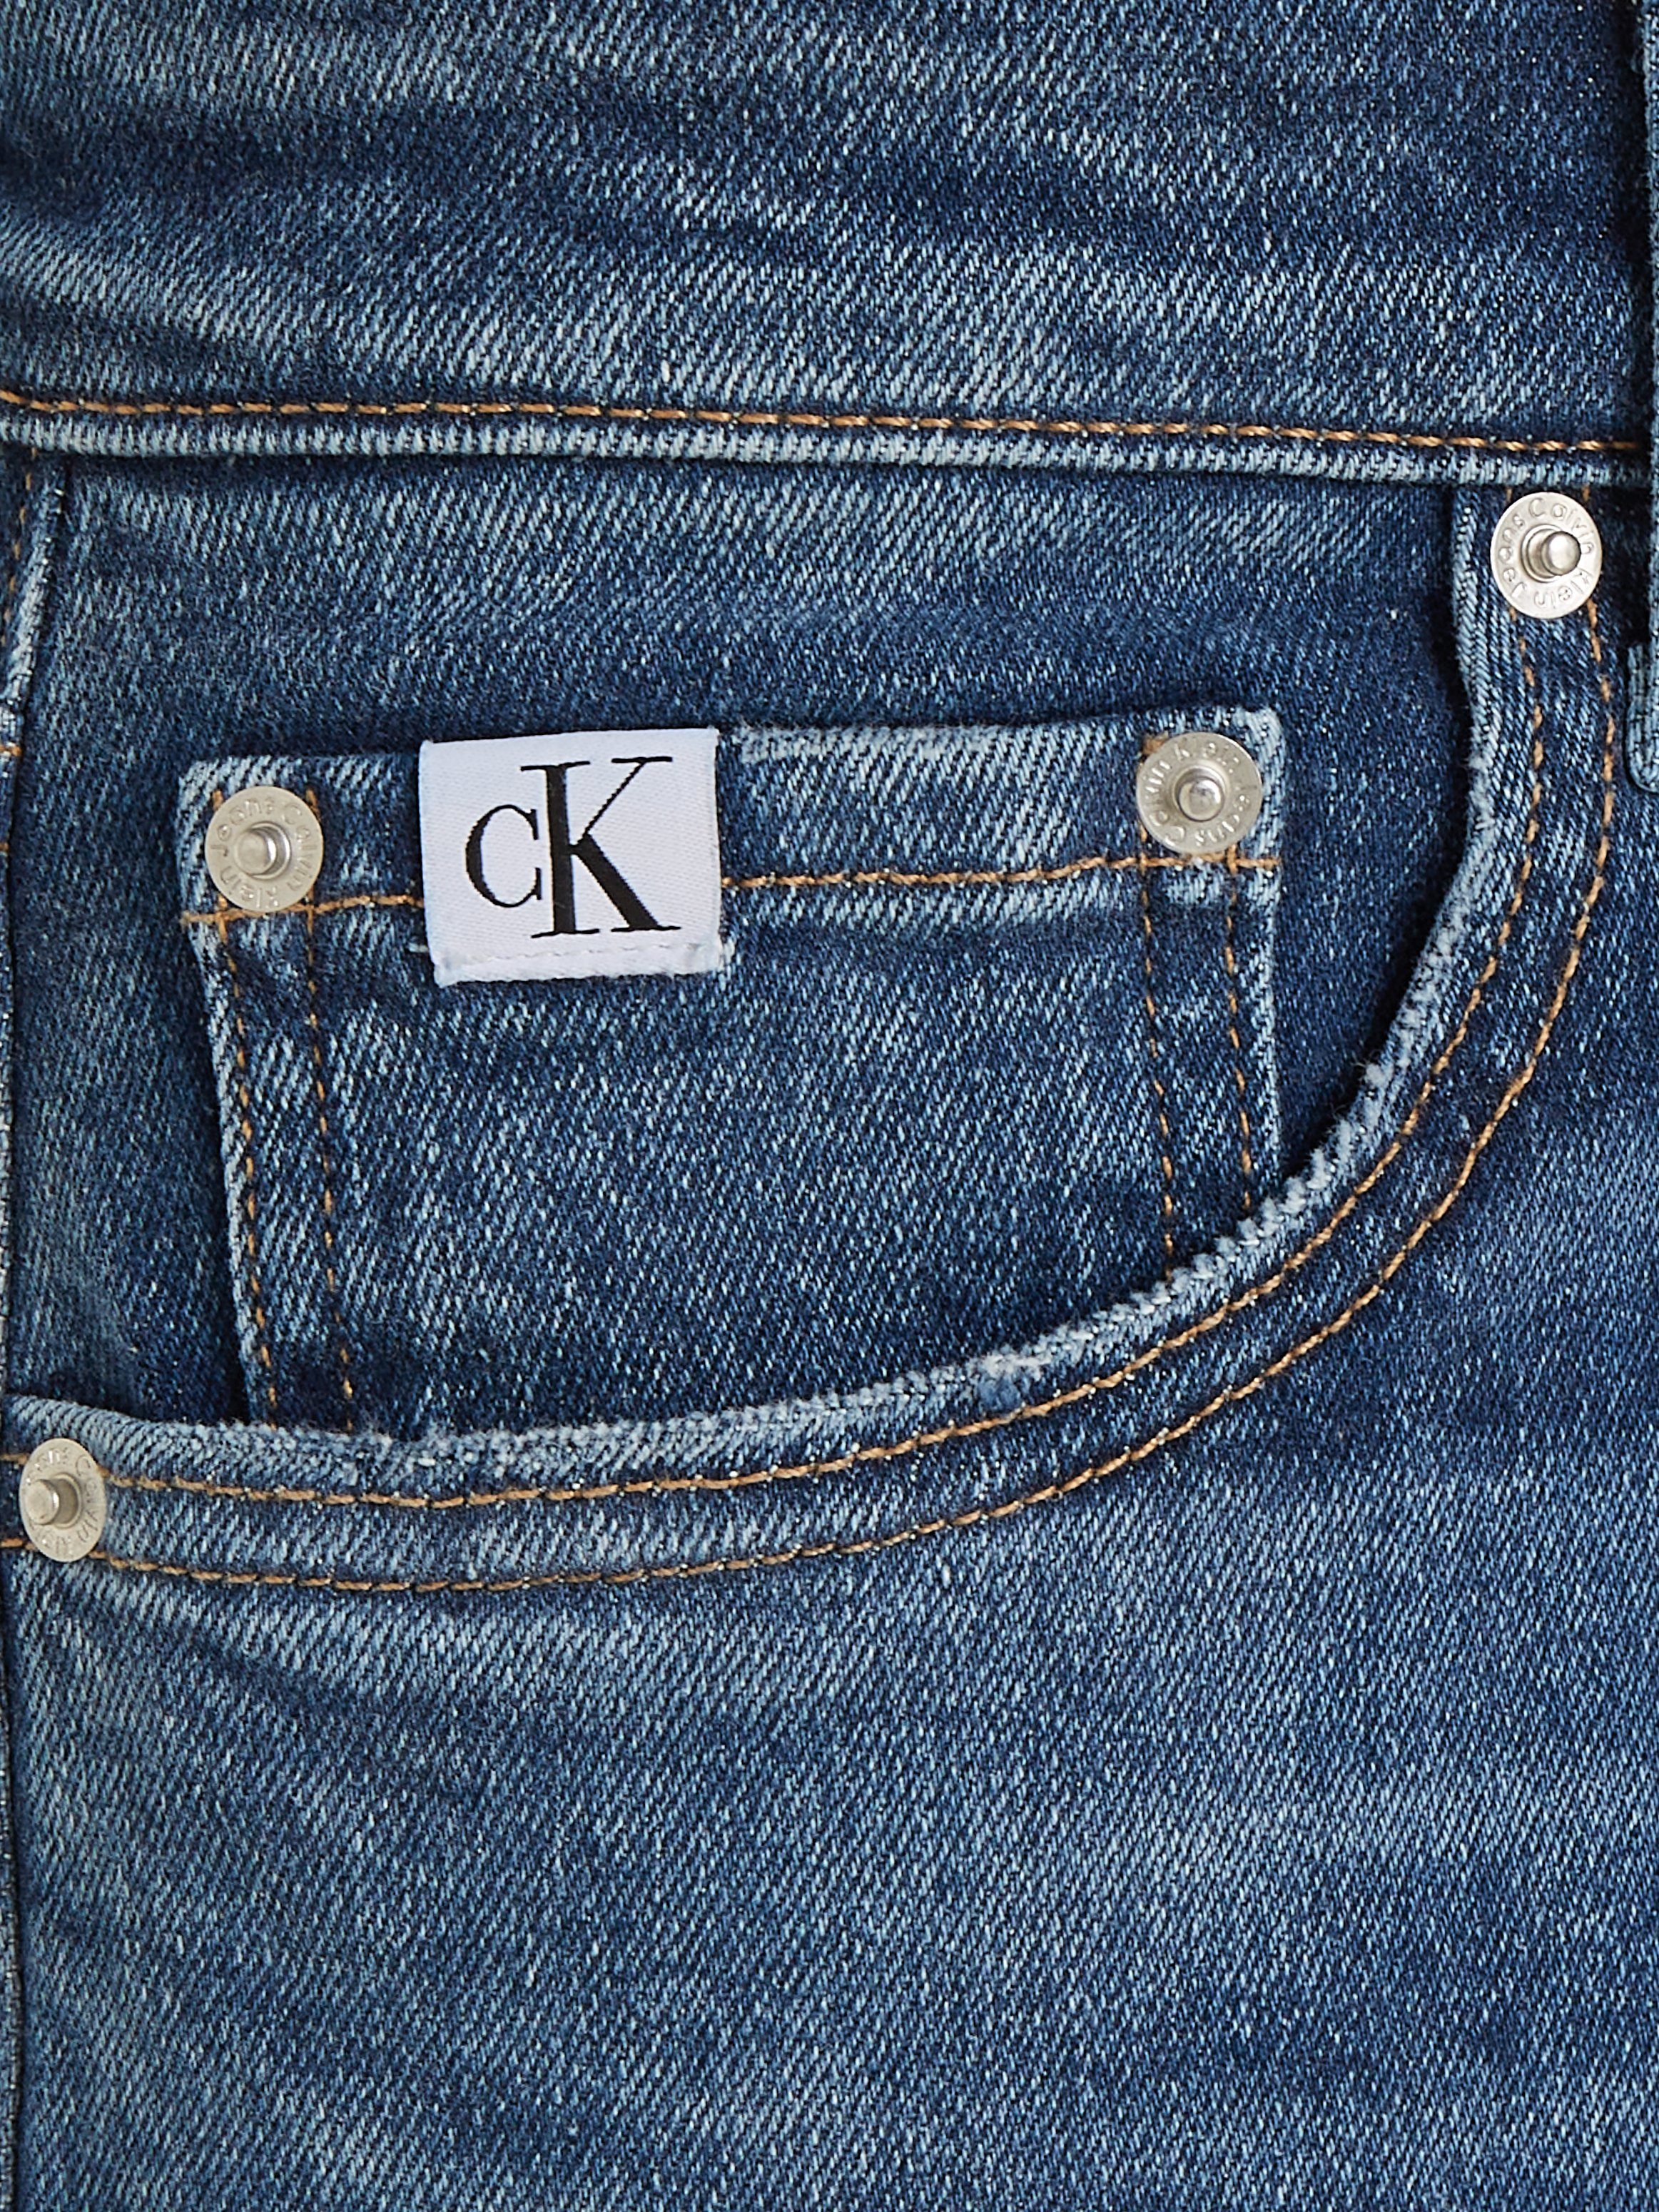 Calvin Klein 7 8 jeans DAD JEAN